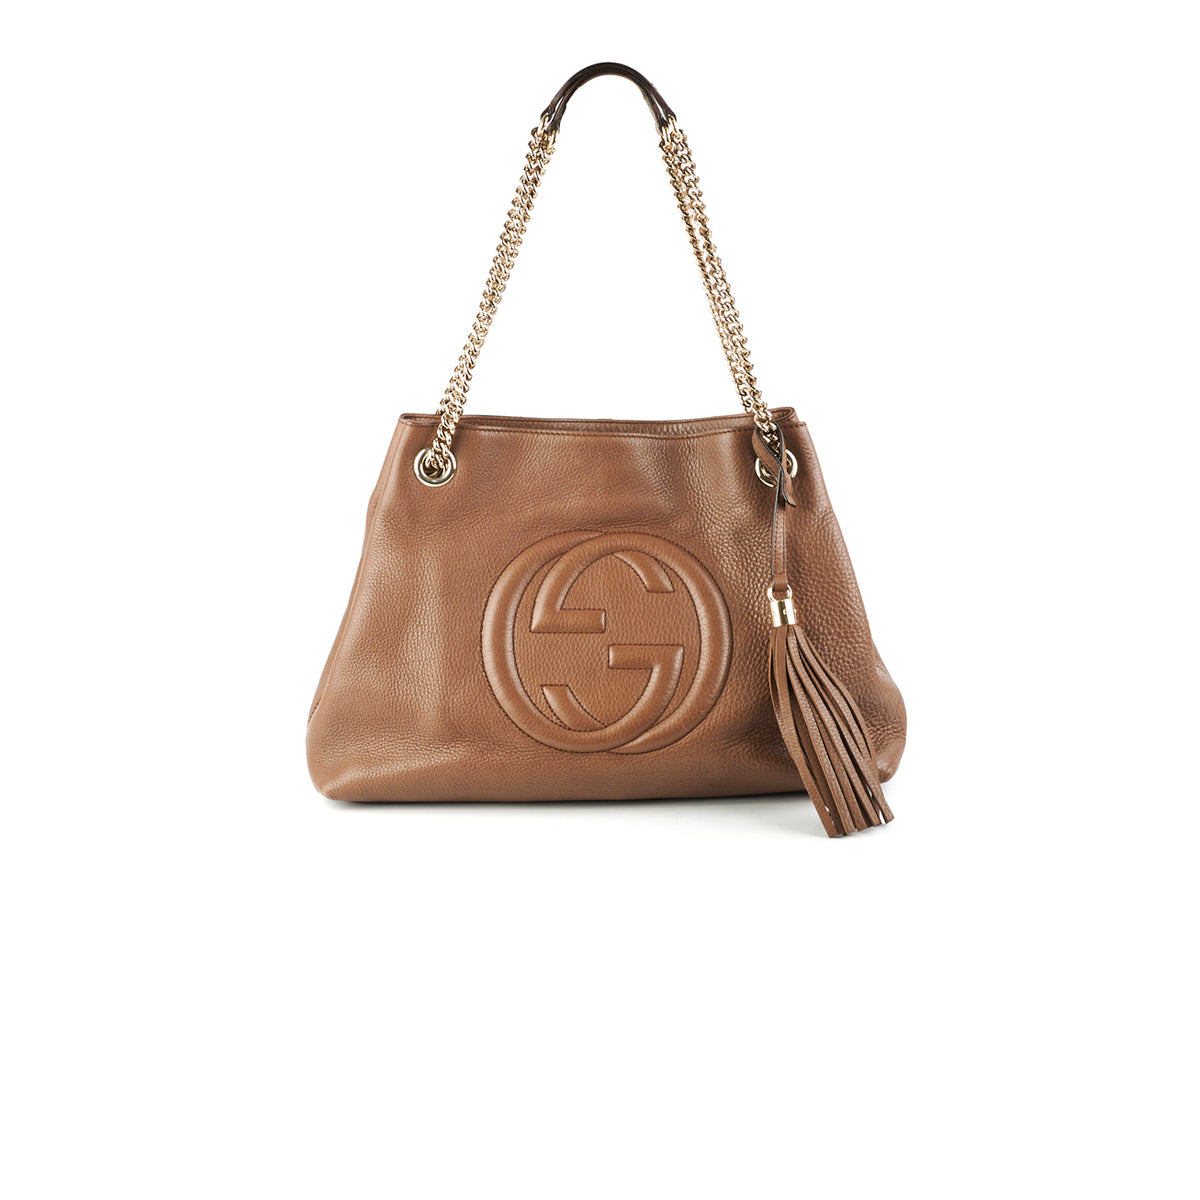 Gucci Soho Hobo Bag - Brown Hobos, Handbags - GUC105457